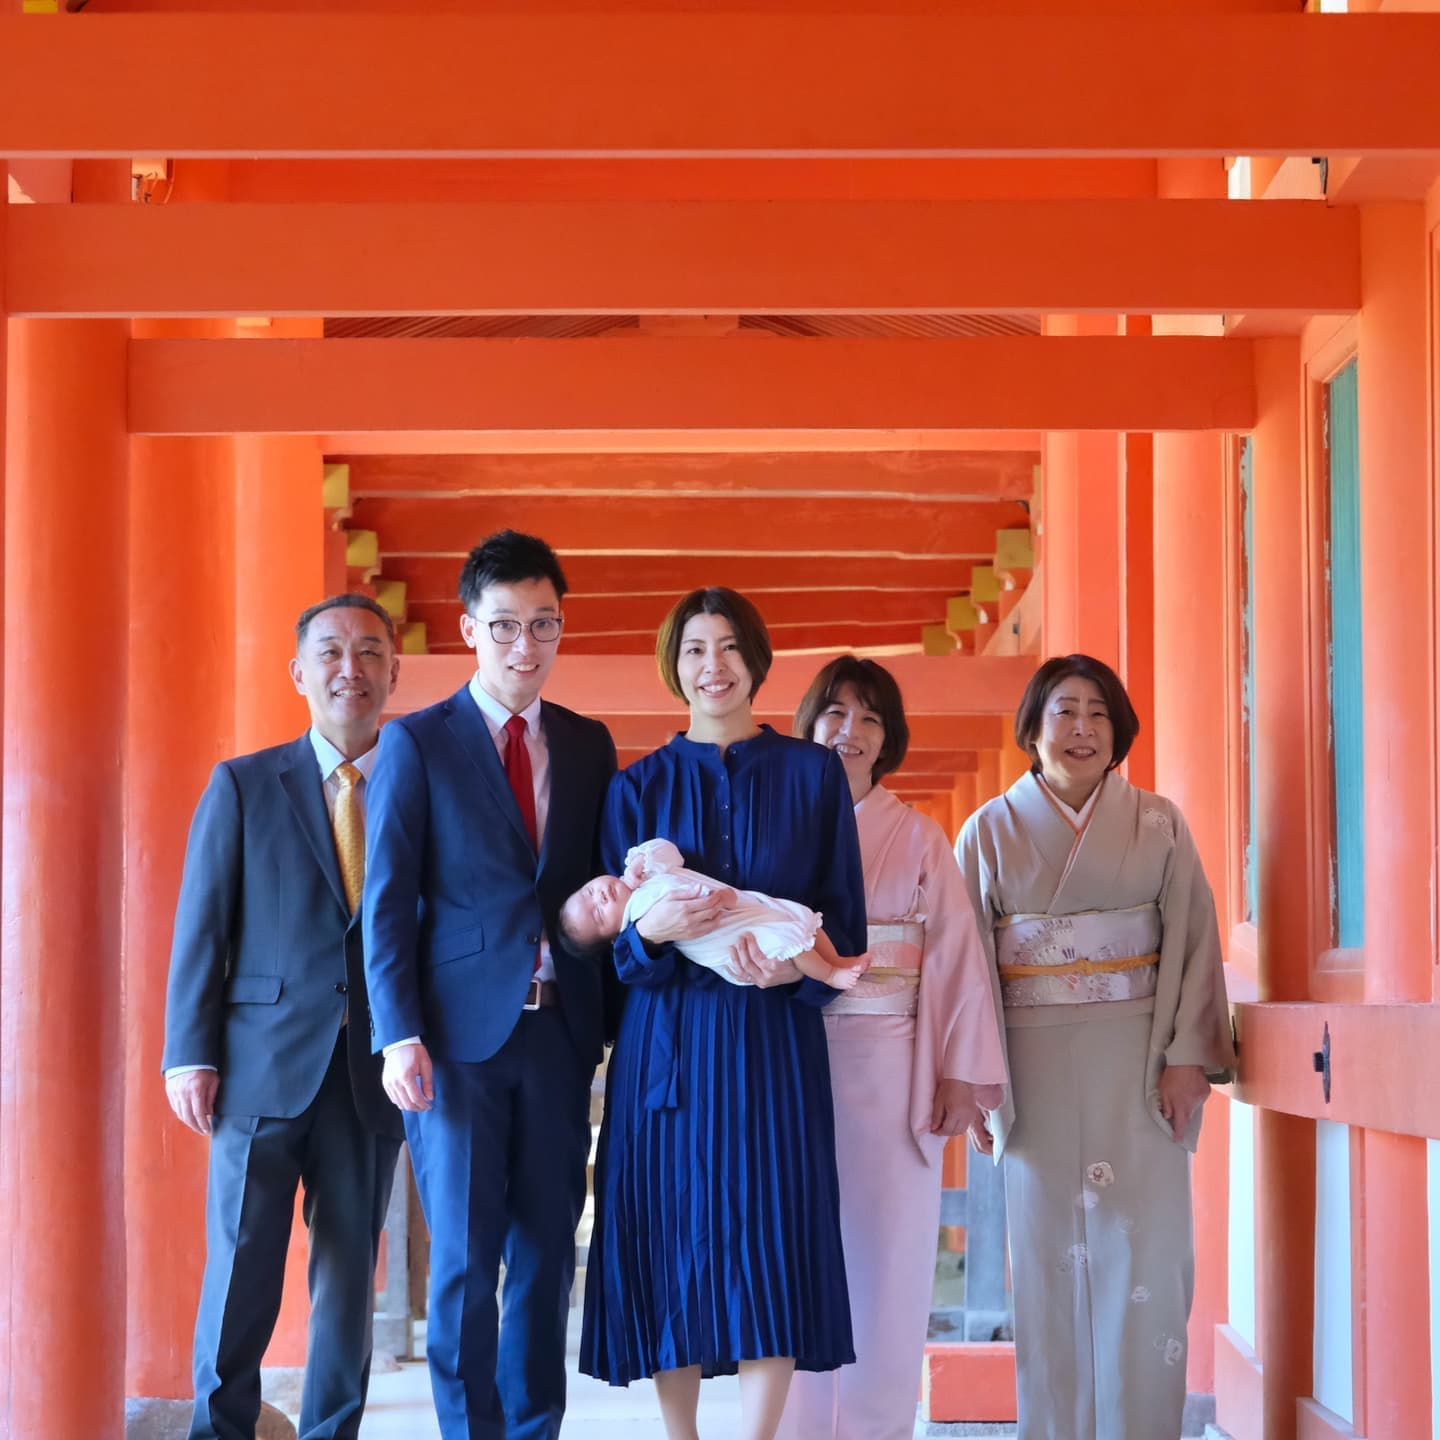 奈良の春日大社でお宮参りをした写真